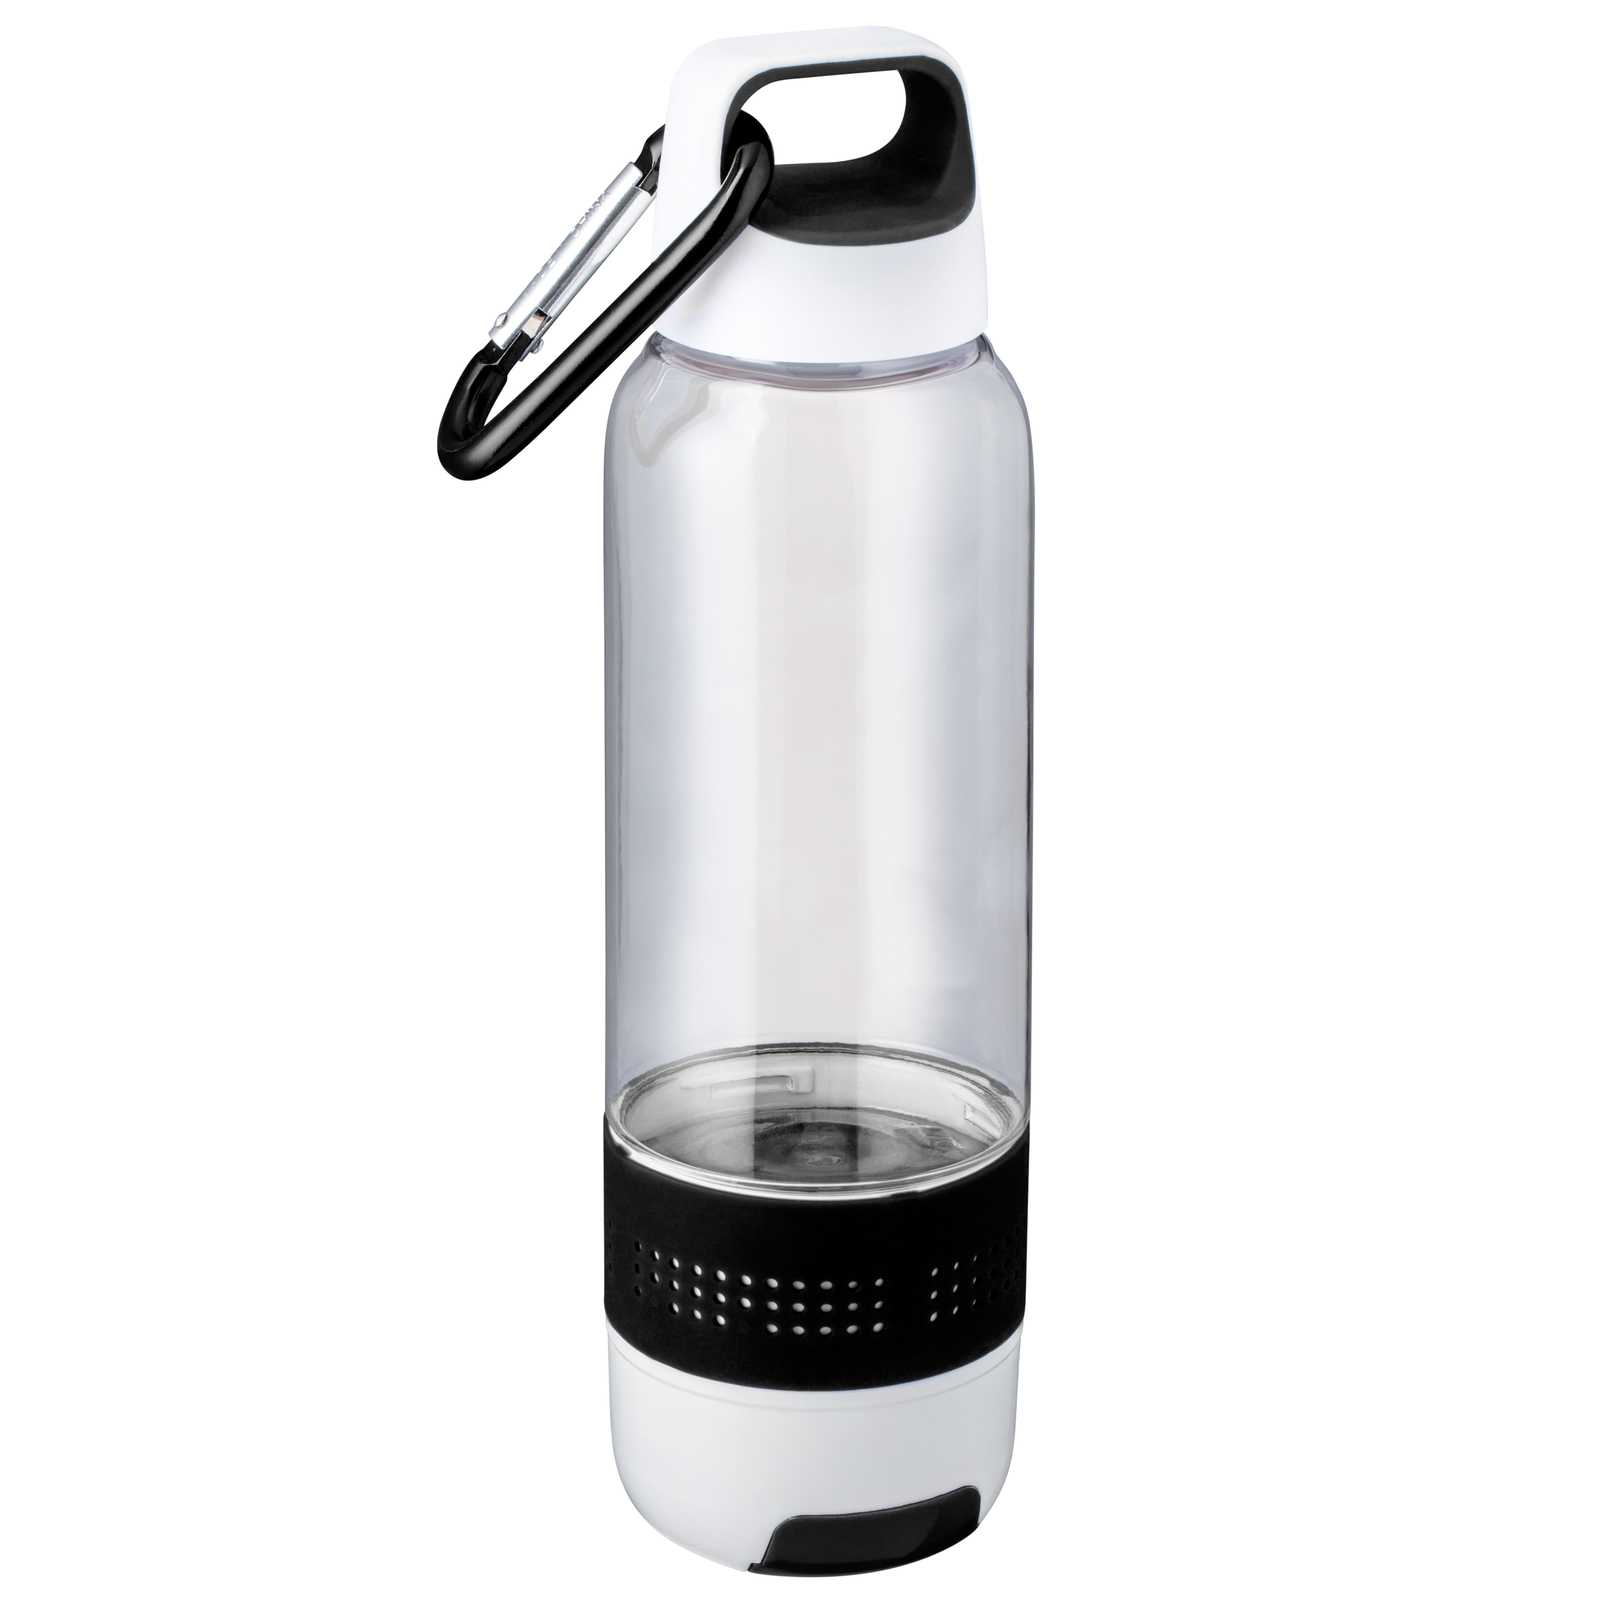 LM Trinkflasche mit Handtuch und Kühlfunktion REFLECTS-SUMATRA BLACK schwarz, transparent, weiß